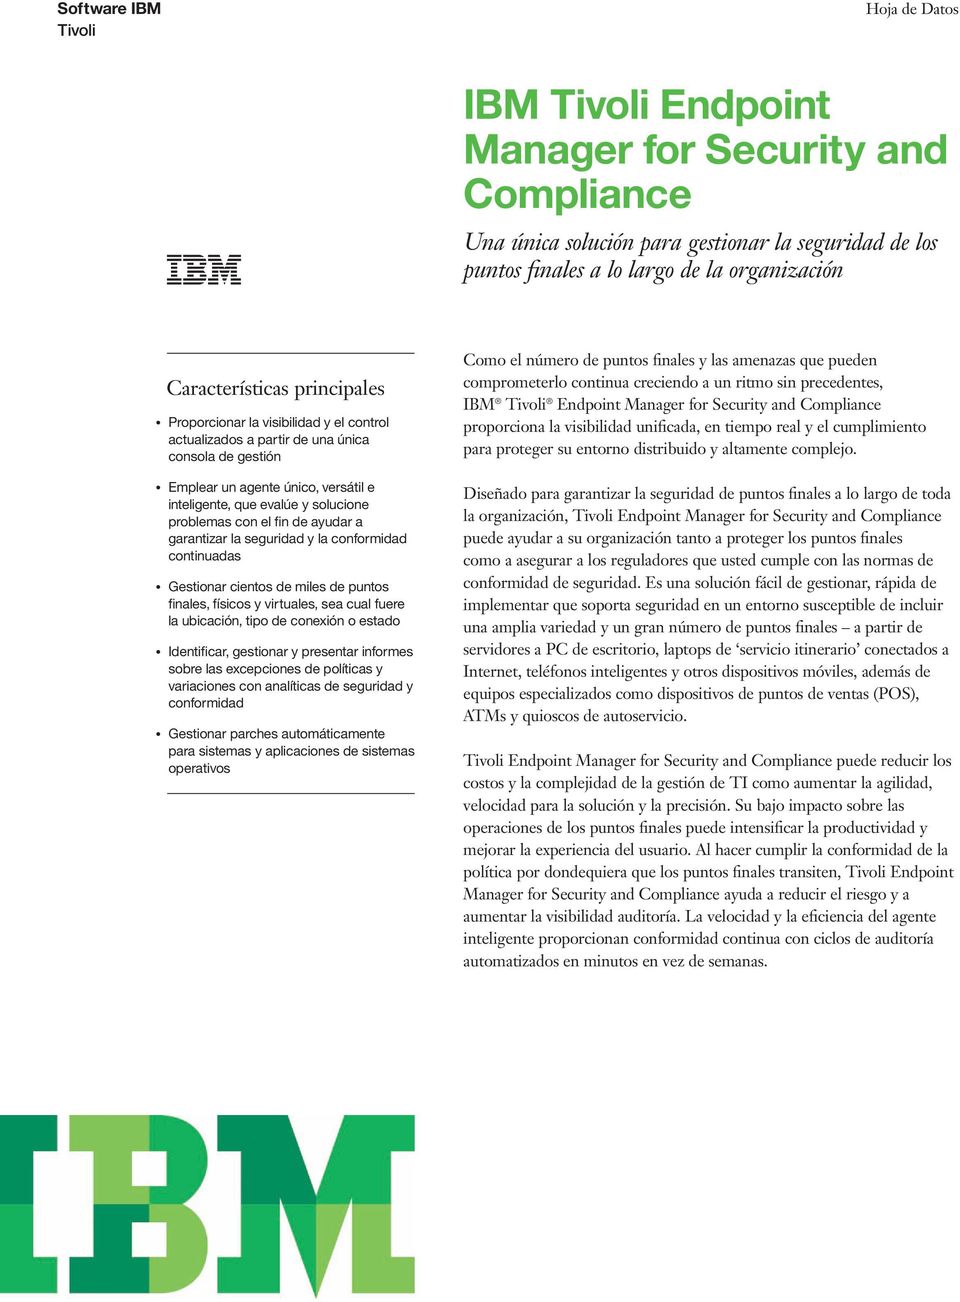 IBM Endpoint Manager for Security and Compliance proporciona la visibilidad unificada, en tiempo real y el cumplimiento para proteger su entorno distribuido y altamente complejo.